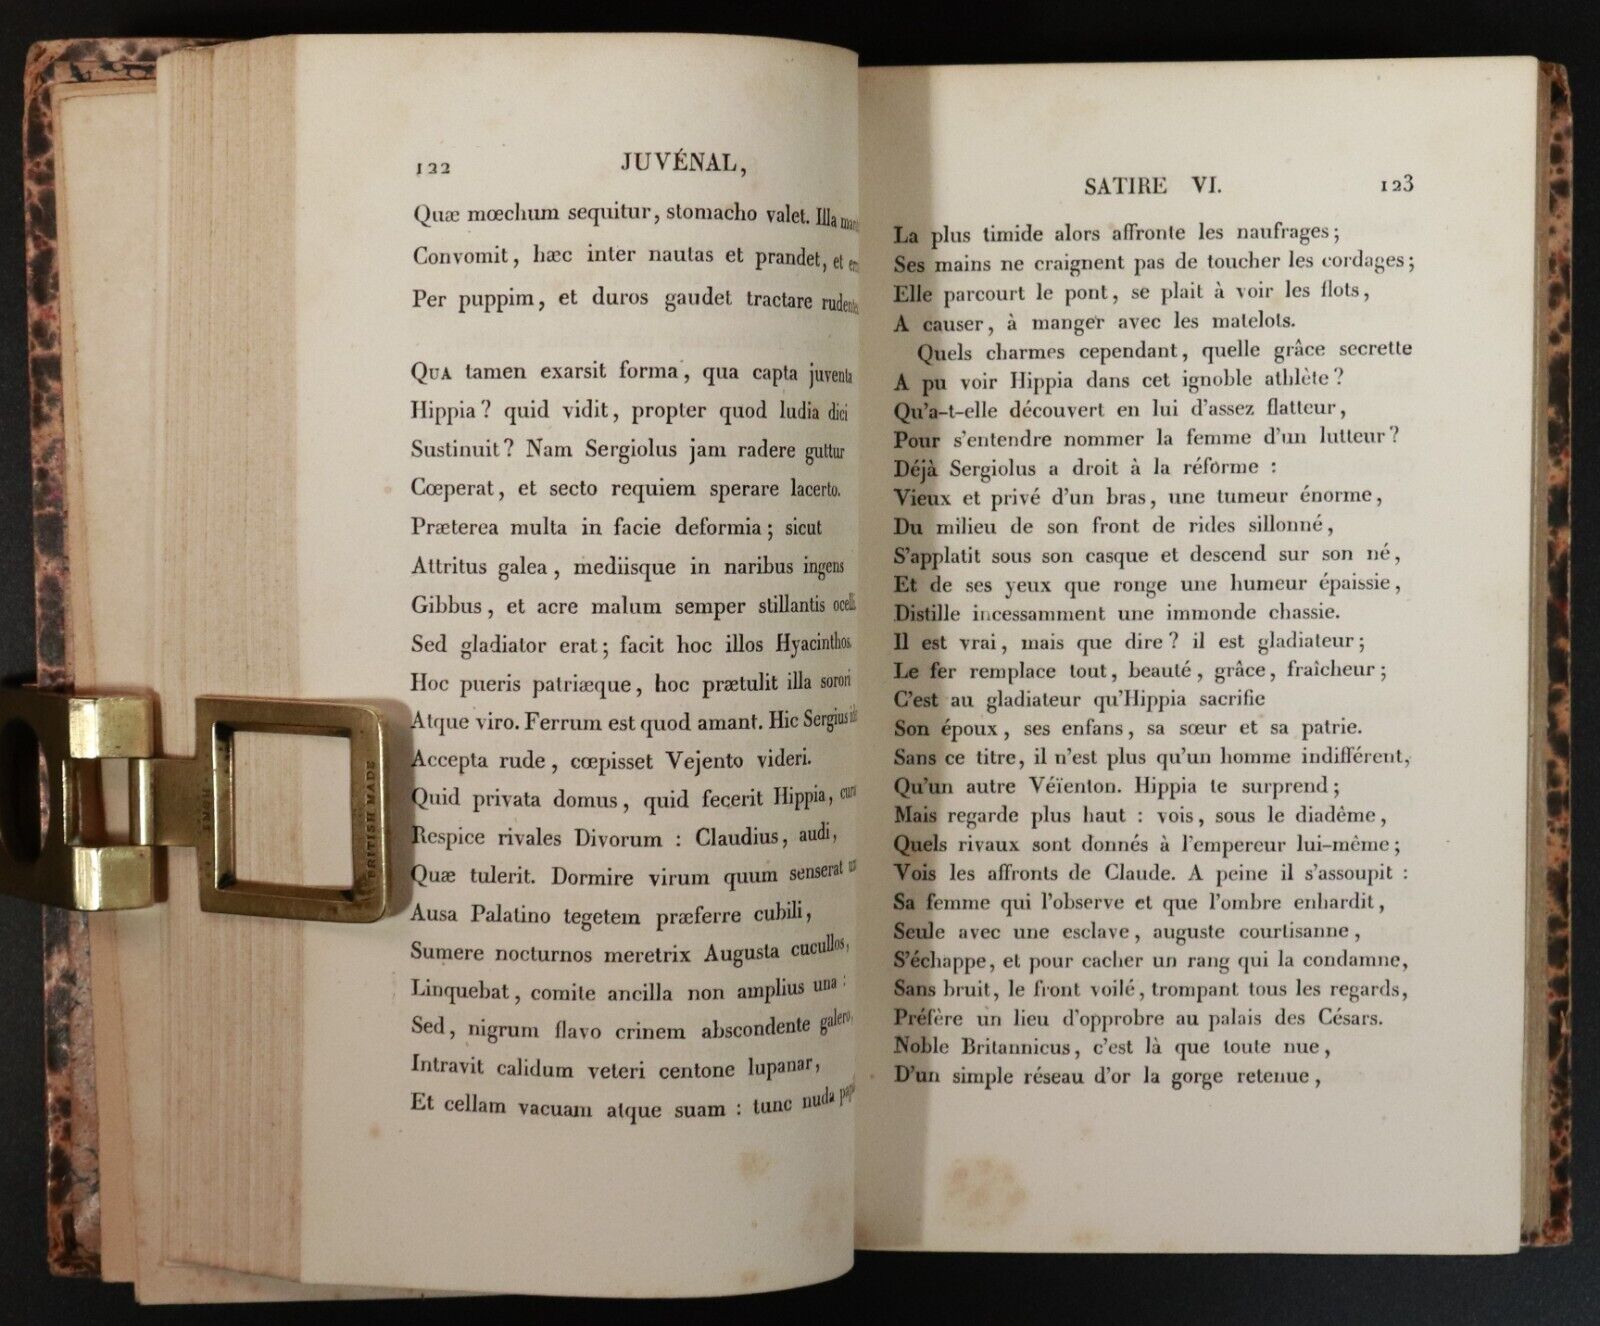 1826 Satires De Juvénal Traduites En Vers Français Antiquarian Poetry Book